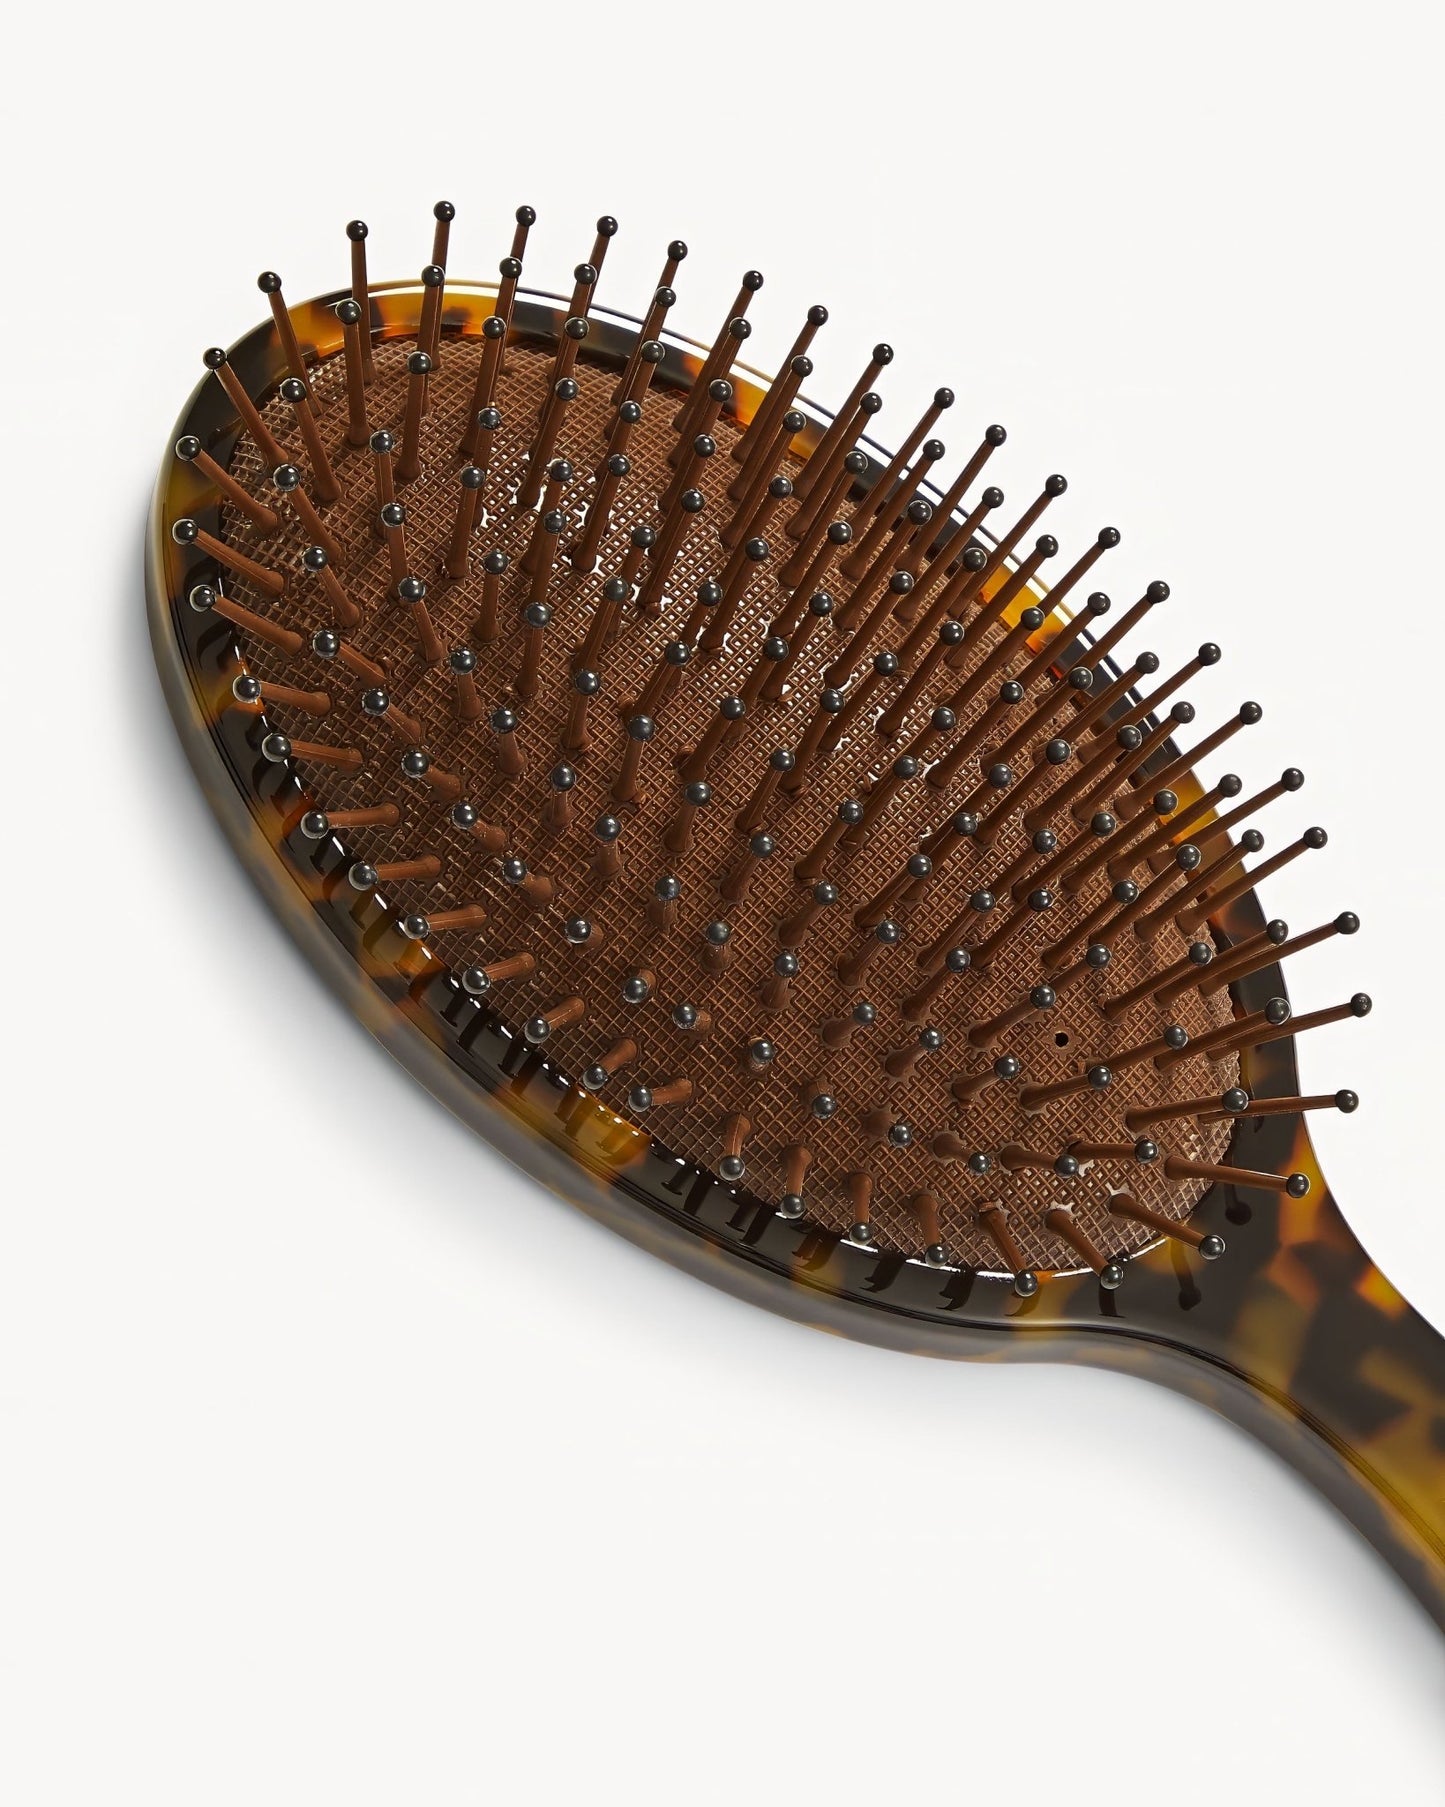 MACHETE Grande Detangling Hair Brush in Classic Tortoise